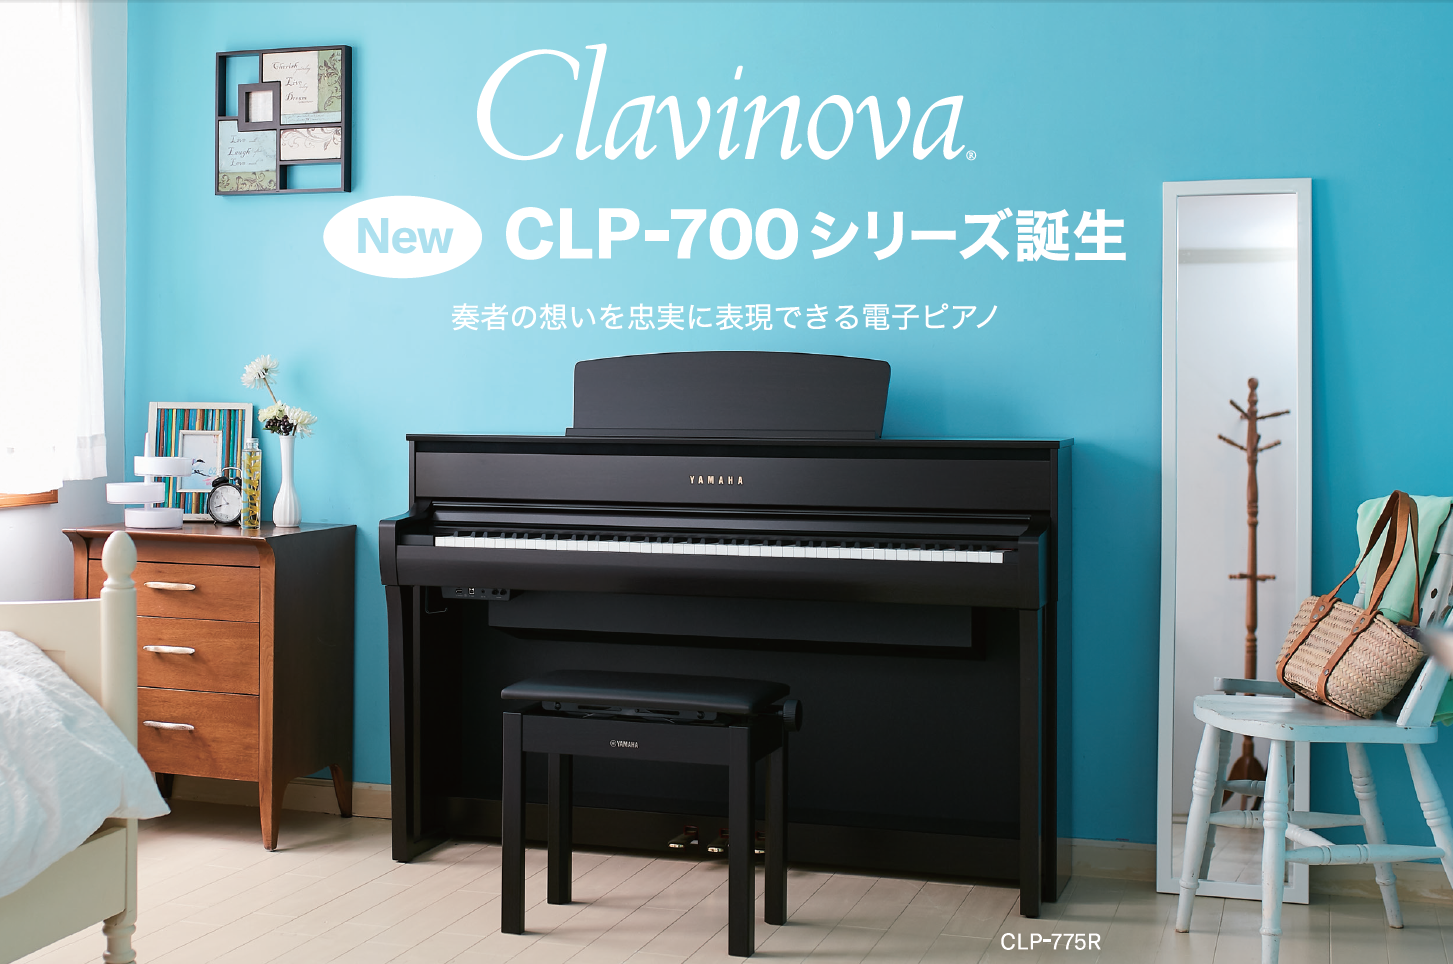 ***関連リンク [https://www.shimamura.co.jp/shop/yokkaichi/piano-keyboard/20190614/3230:title=電子ピアノ総合ページ] *YAMAHAのクラビノーバで大人気のCLPシリーズの新モデルが発売！ご注文も受付中です！ YAMA […]